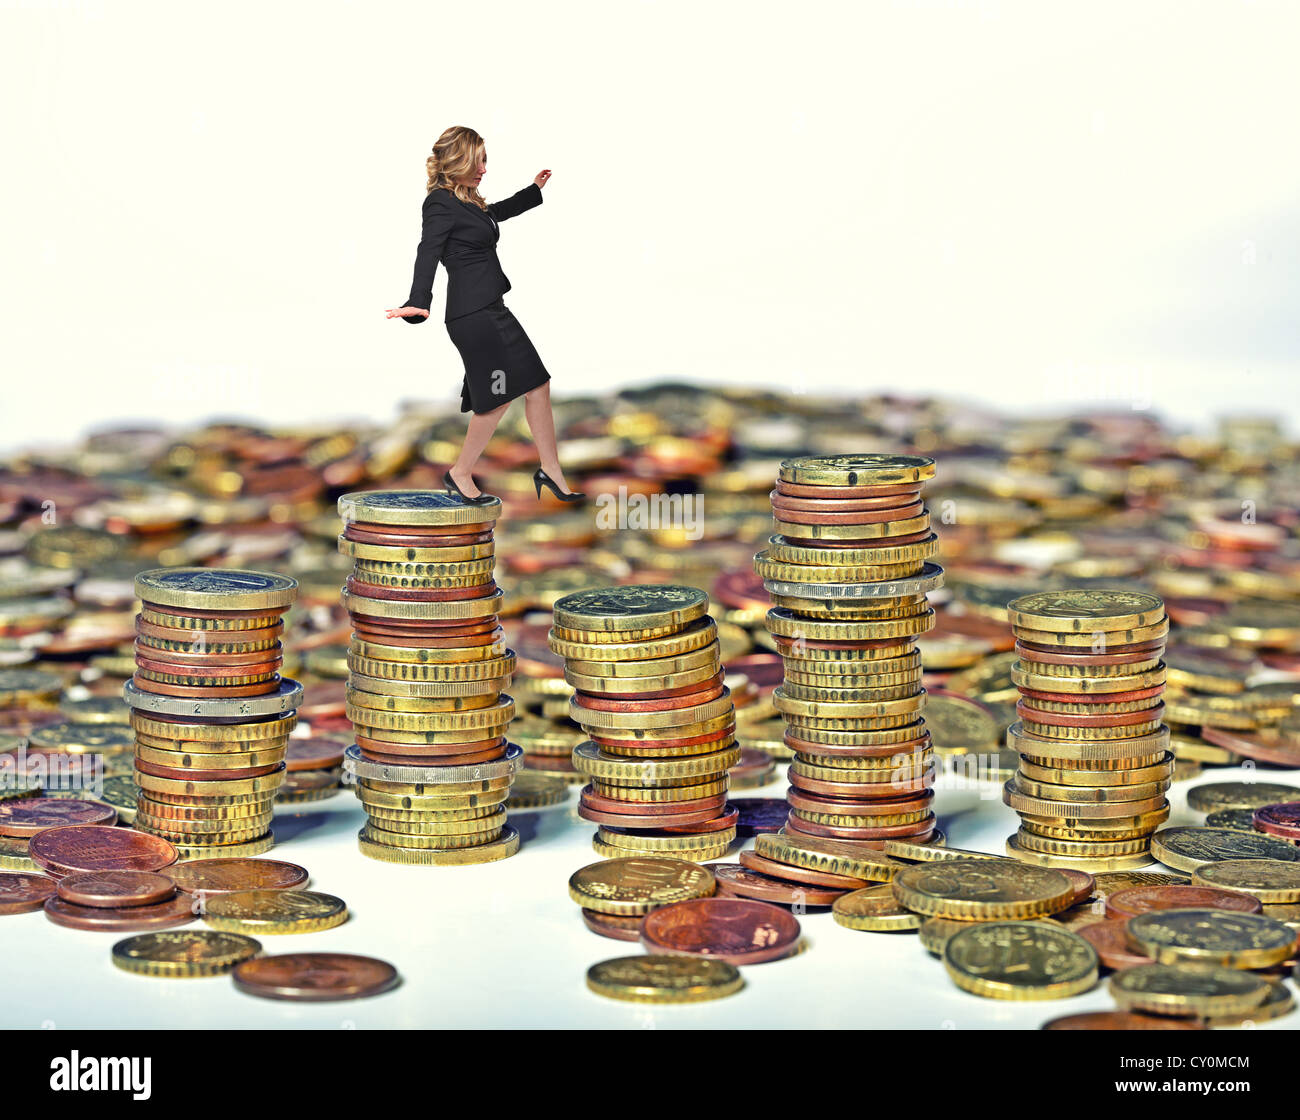 businesswoman walk on euro coin piles Stock Photo